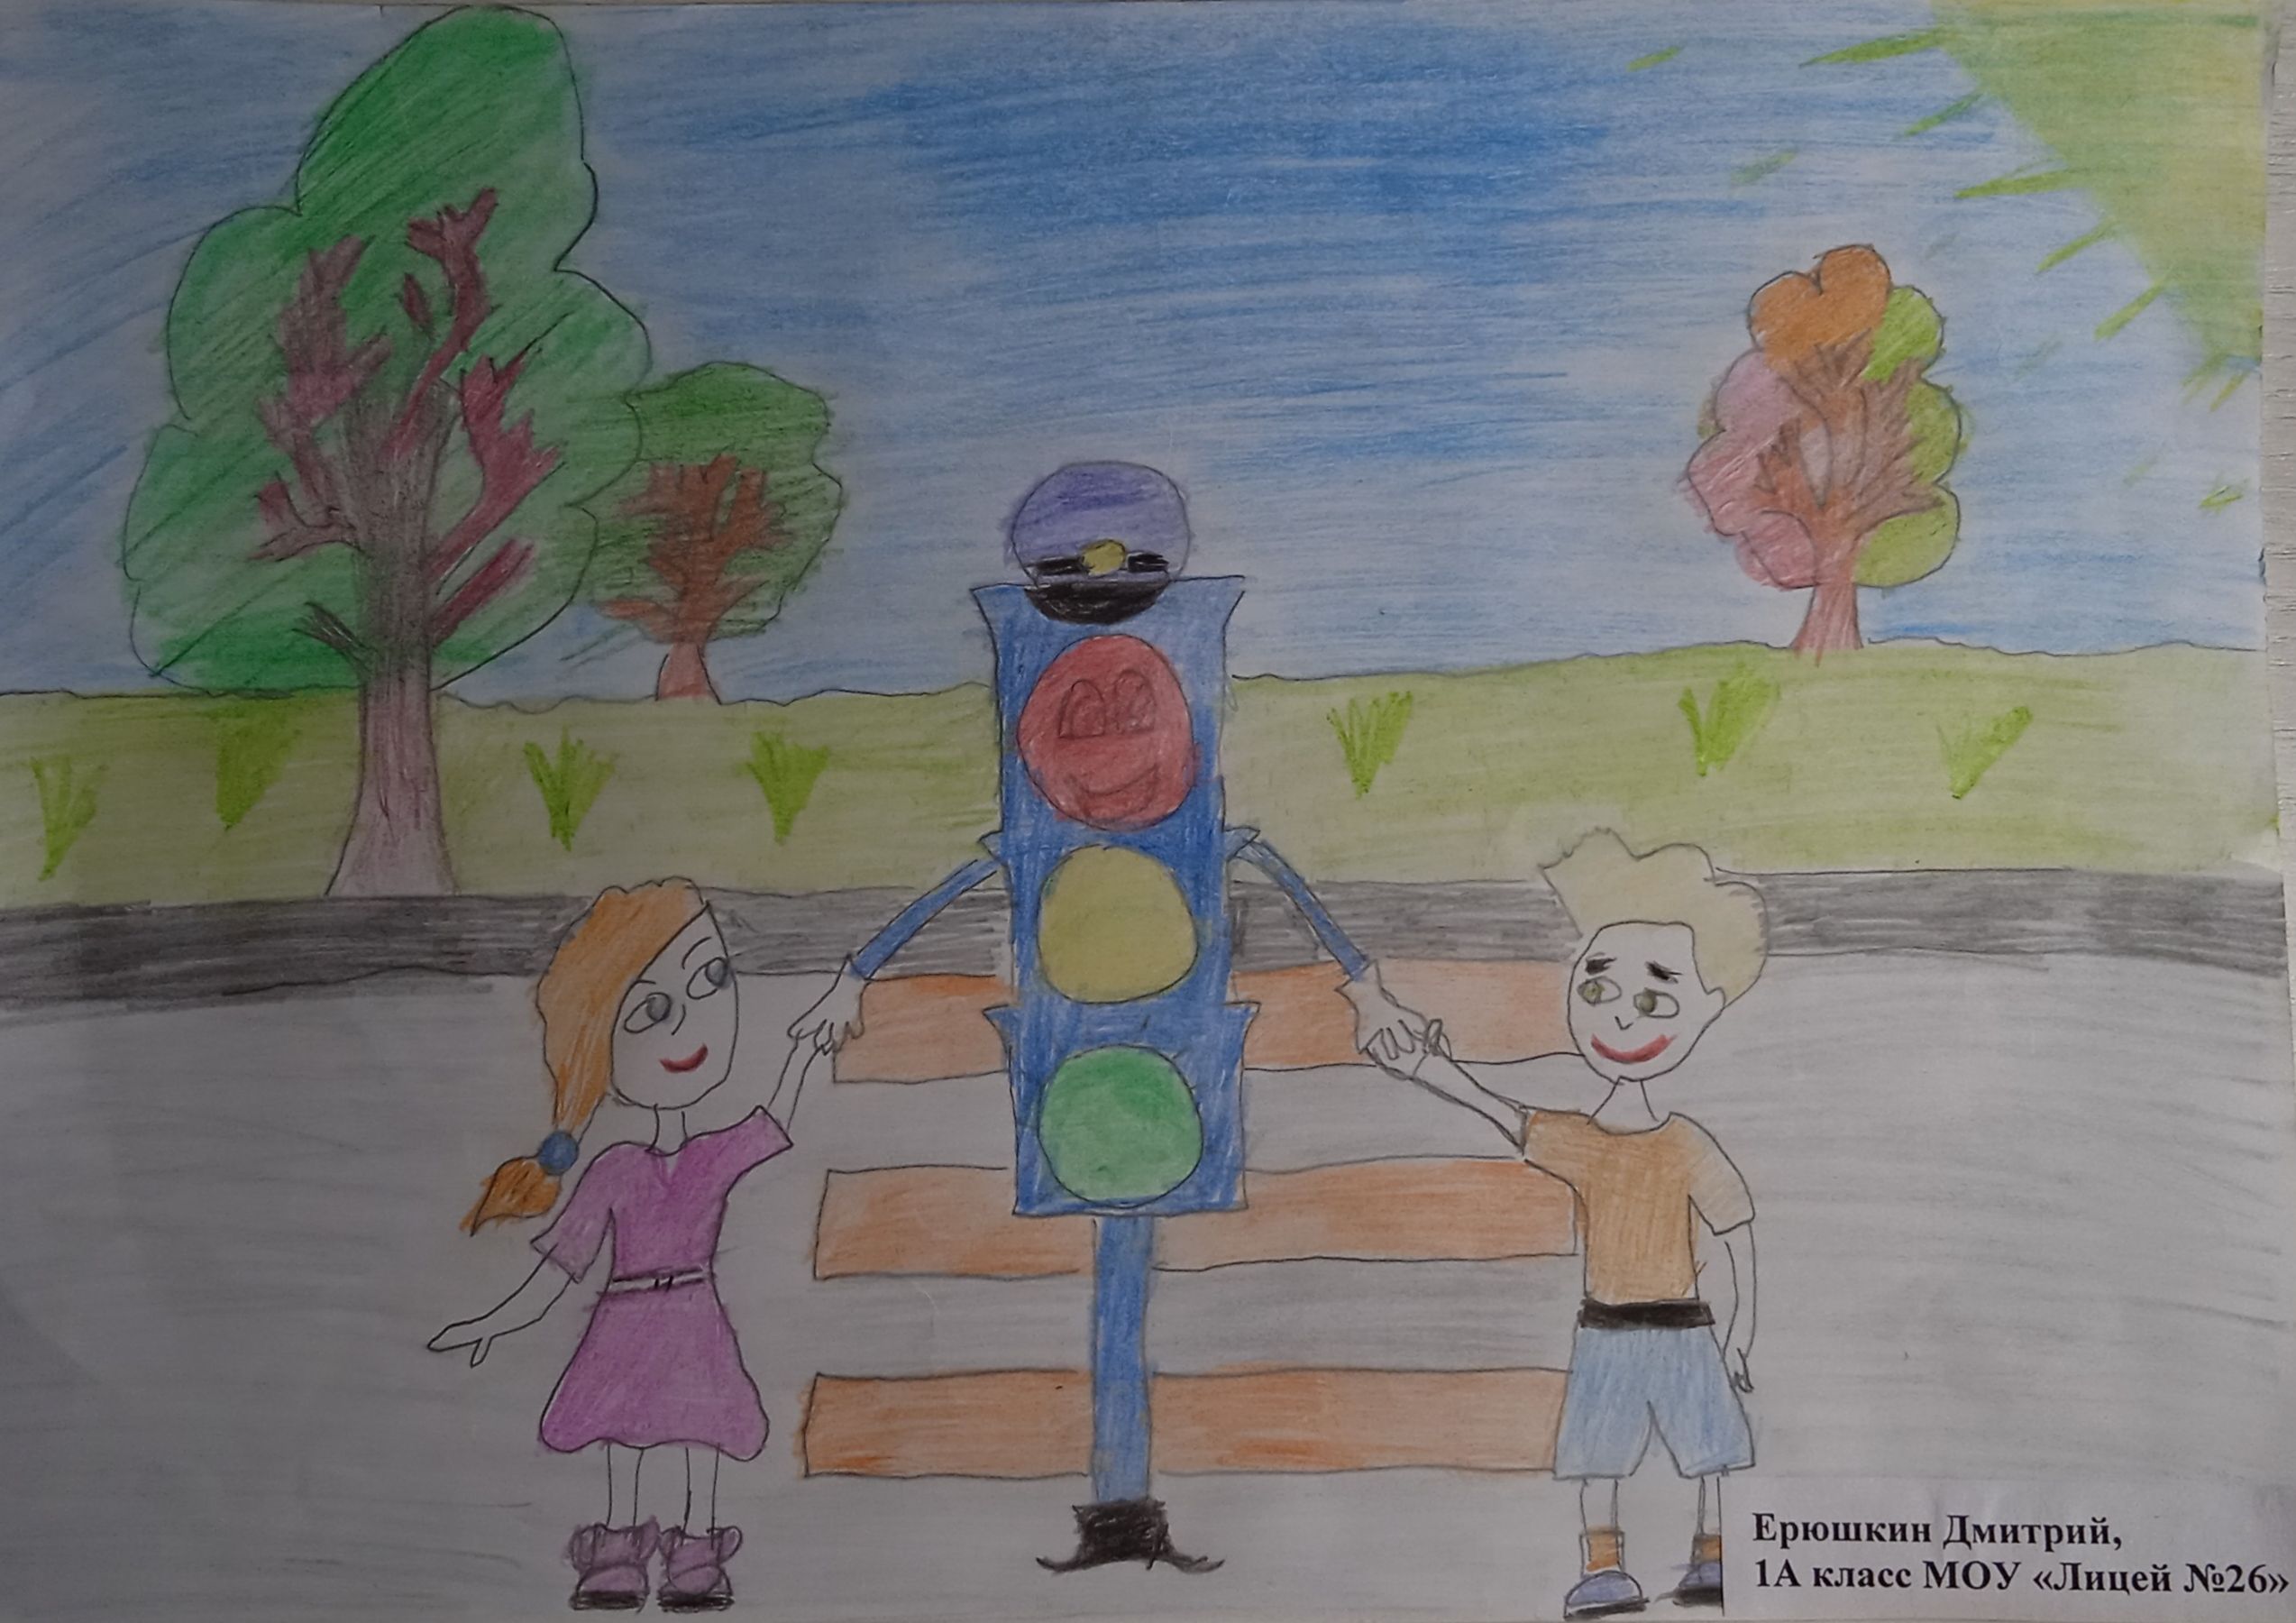 Безопасная дорога рисунок в детский сад